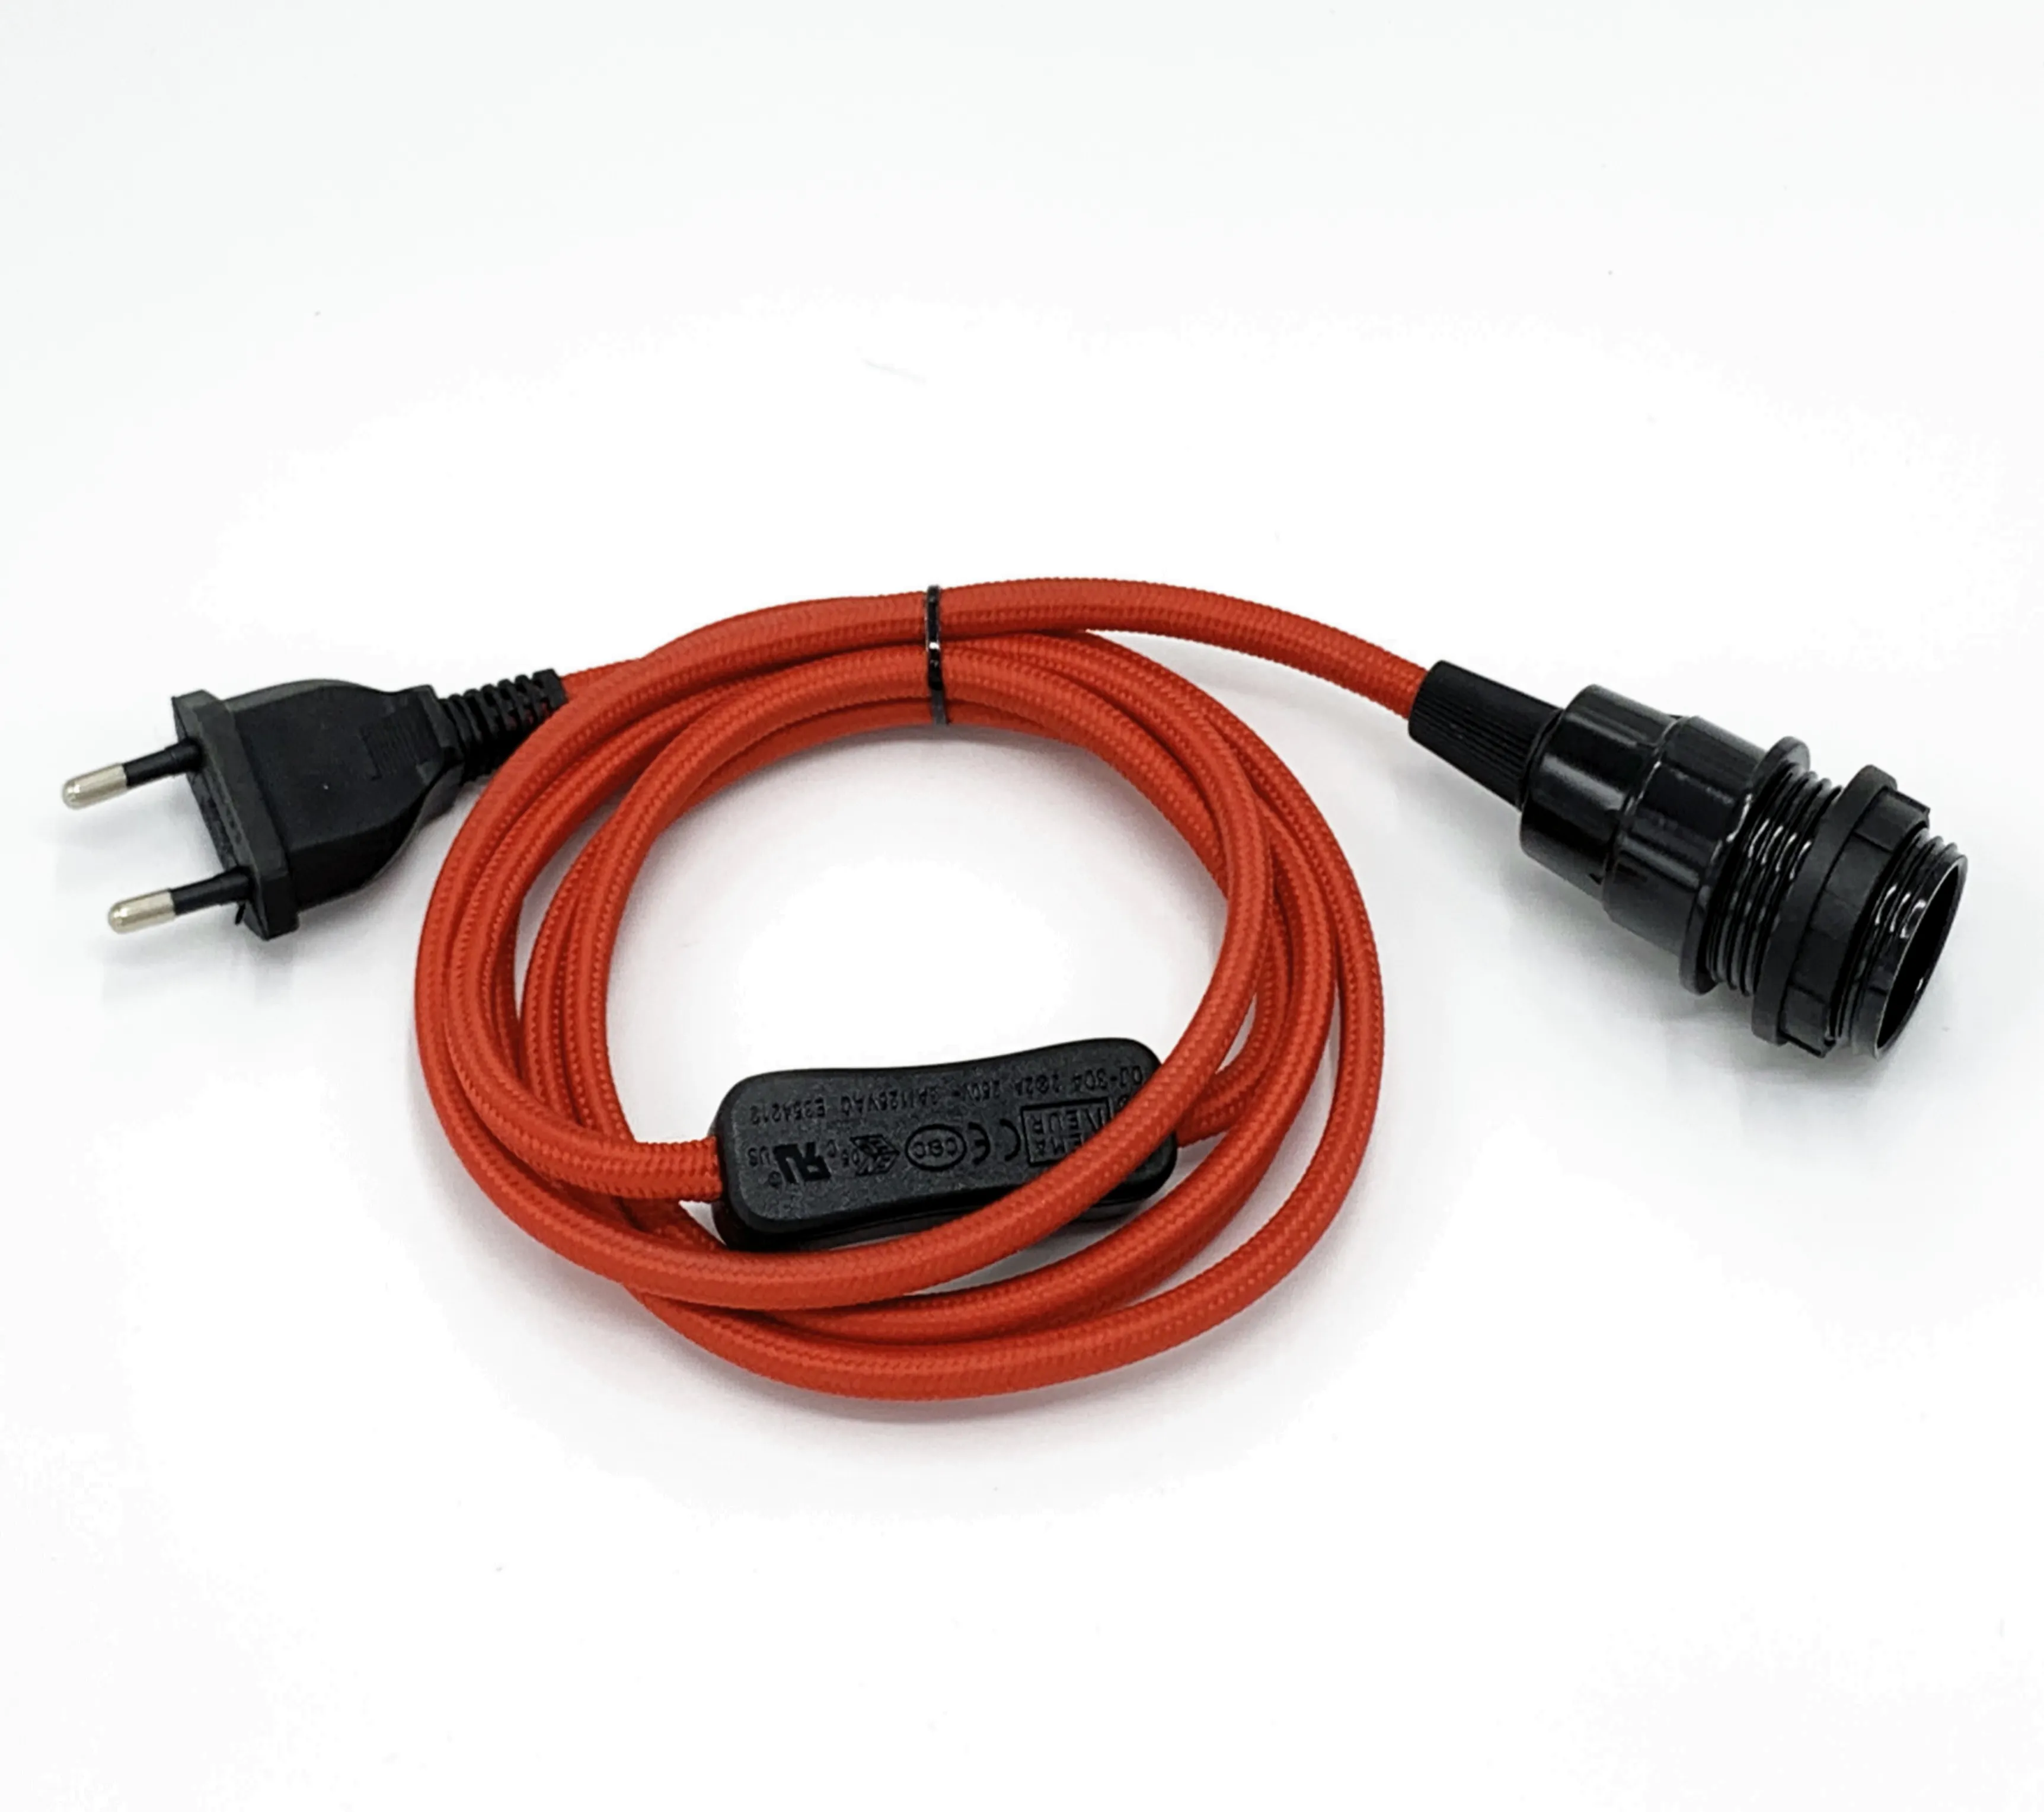 Dệt/Dây Vải E27/E14 Ổ Cắm Dây Thiết Lập Với Plug/Power Cable Cắm Thiết Lập